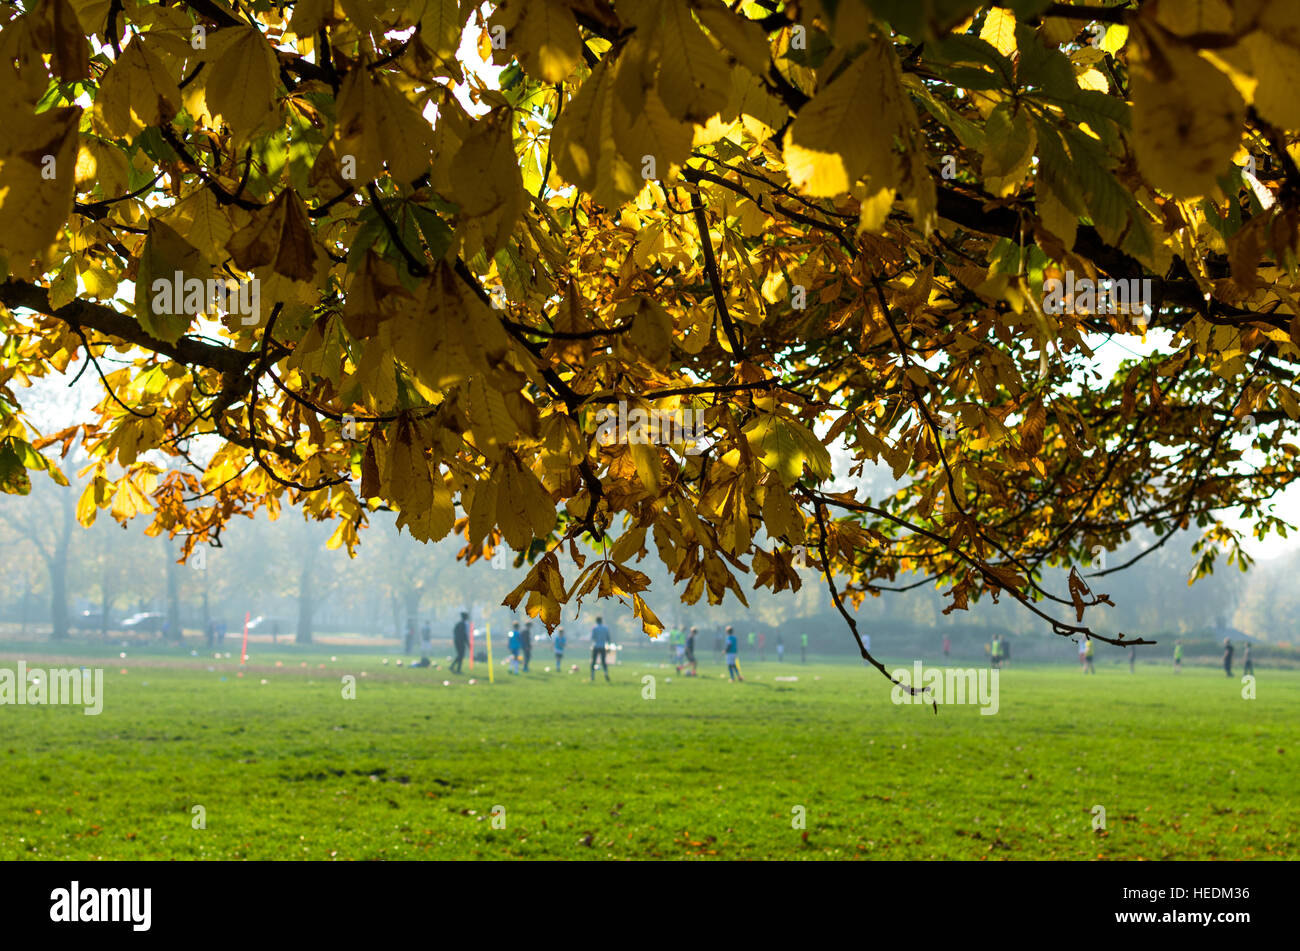 Ein Spiel des Fußballs im Hyde Park im Herbst Stockfoto